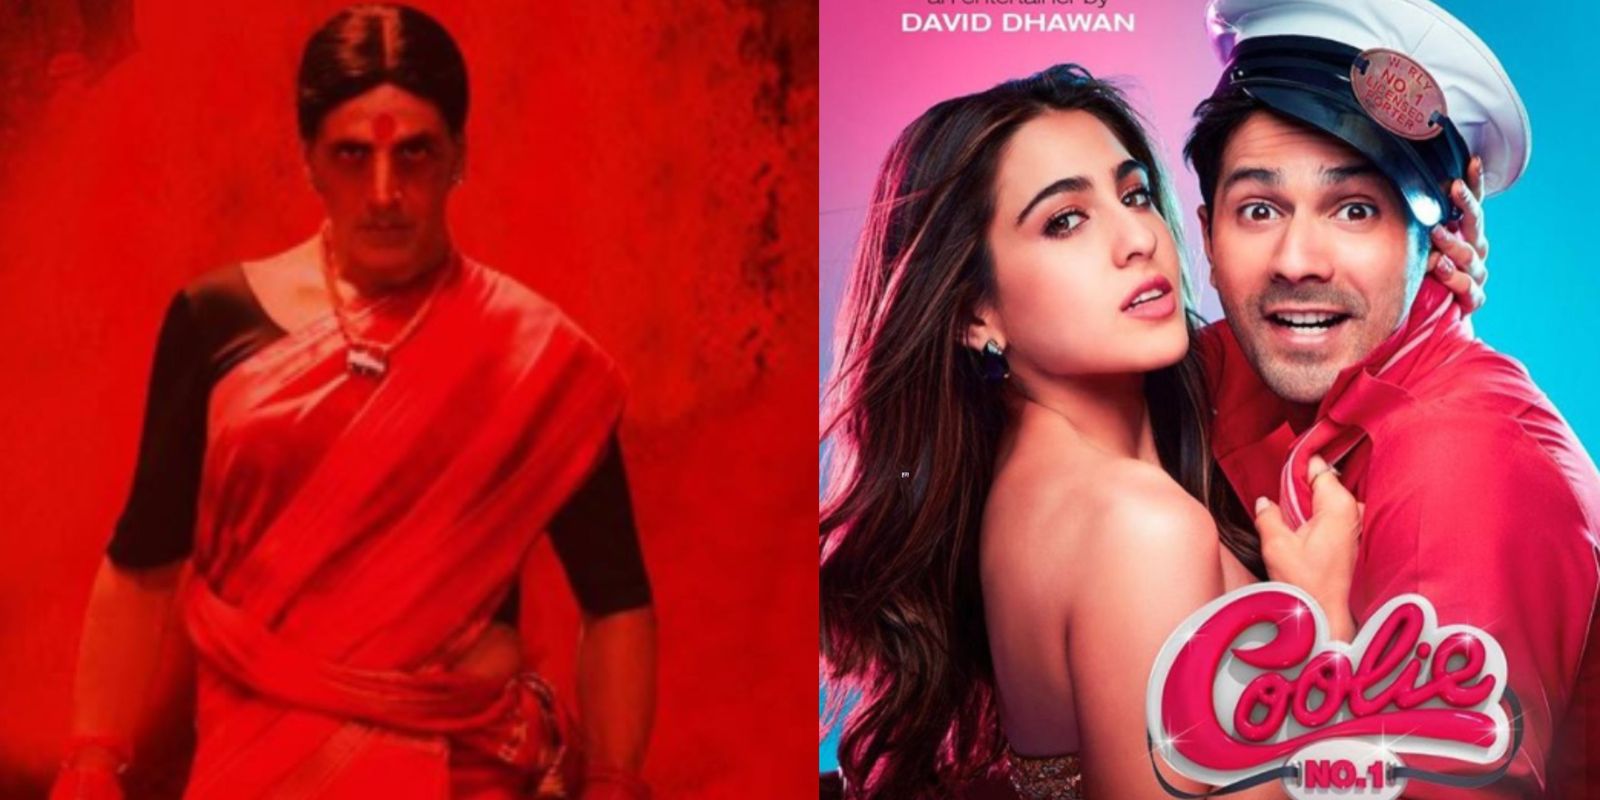 अक्षय कुमार की 'लक्ष्मी बॉम्ब' और वरुण धवन की 'कुली नंबर 1' में होगी जबरदस्त टक्कर, दिवाली पर रिलीज़ हो रही हैं फ़िल्म